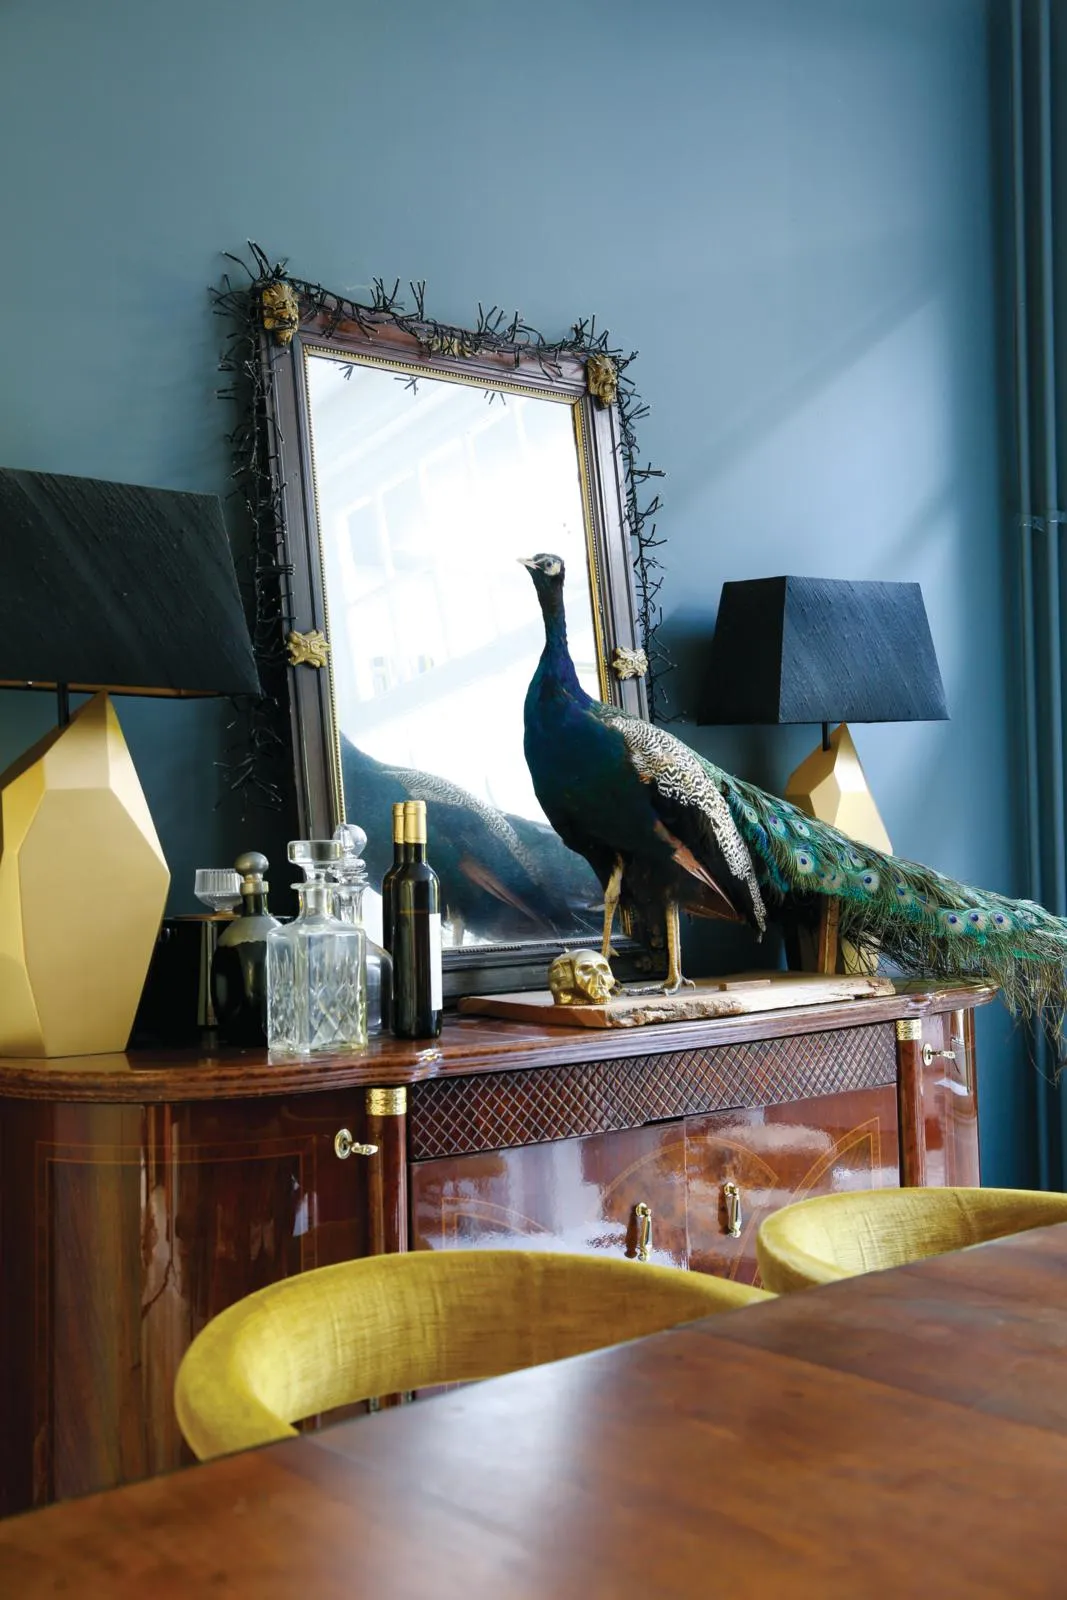 Dutch home, antique taxidermy peacock.